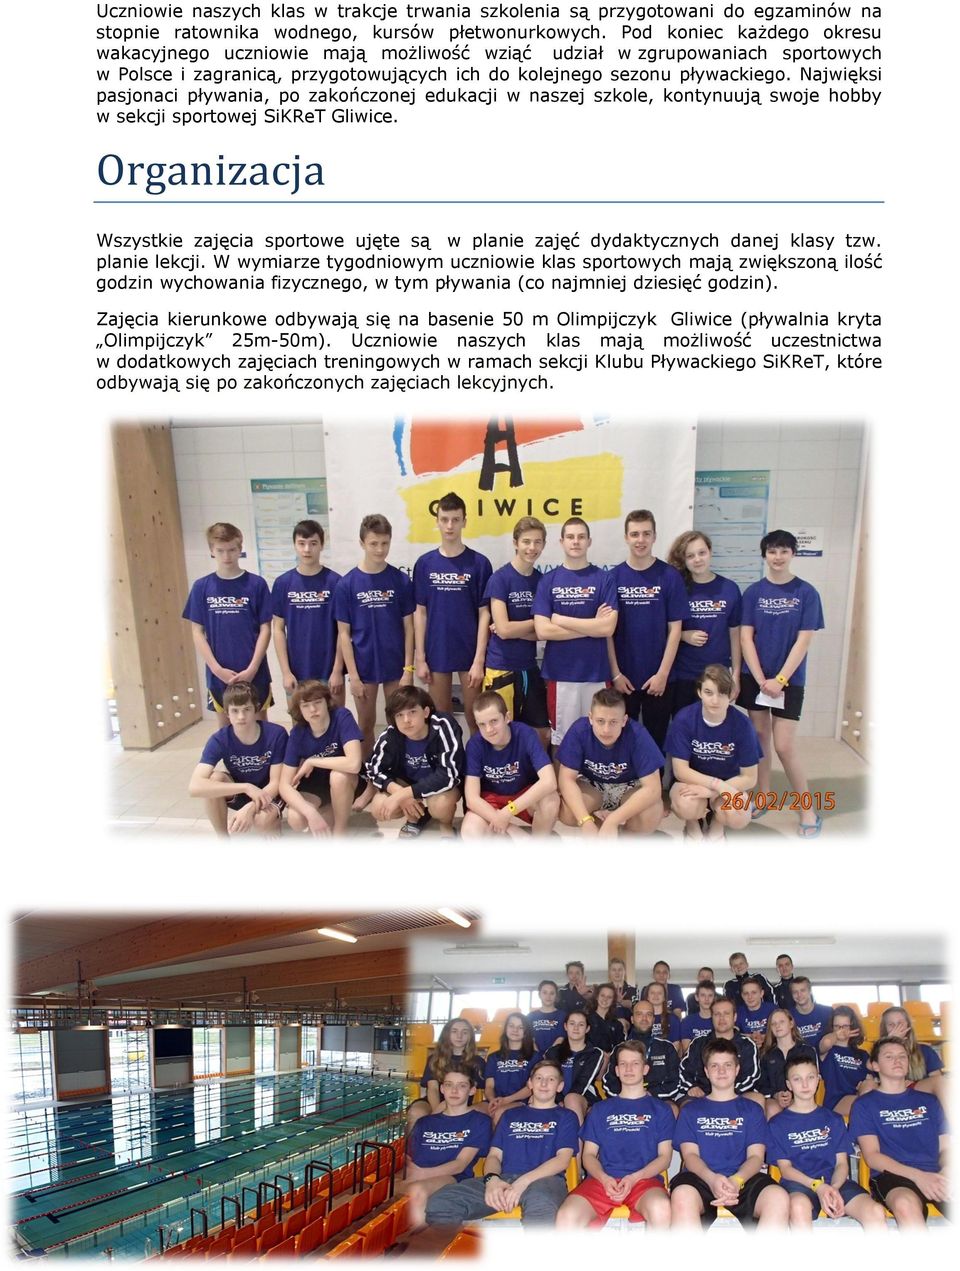 Najwięksi pasjonaci pływania, po zakończonej edukacji w naszej szkole, kontynuują swoje hobby w sekcji sportowej SiKReT Gliwice.